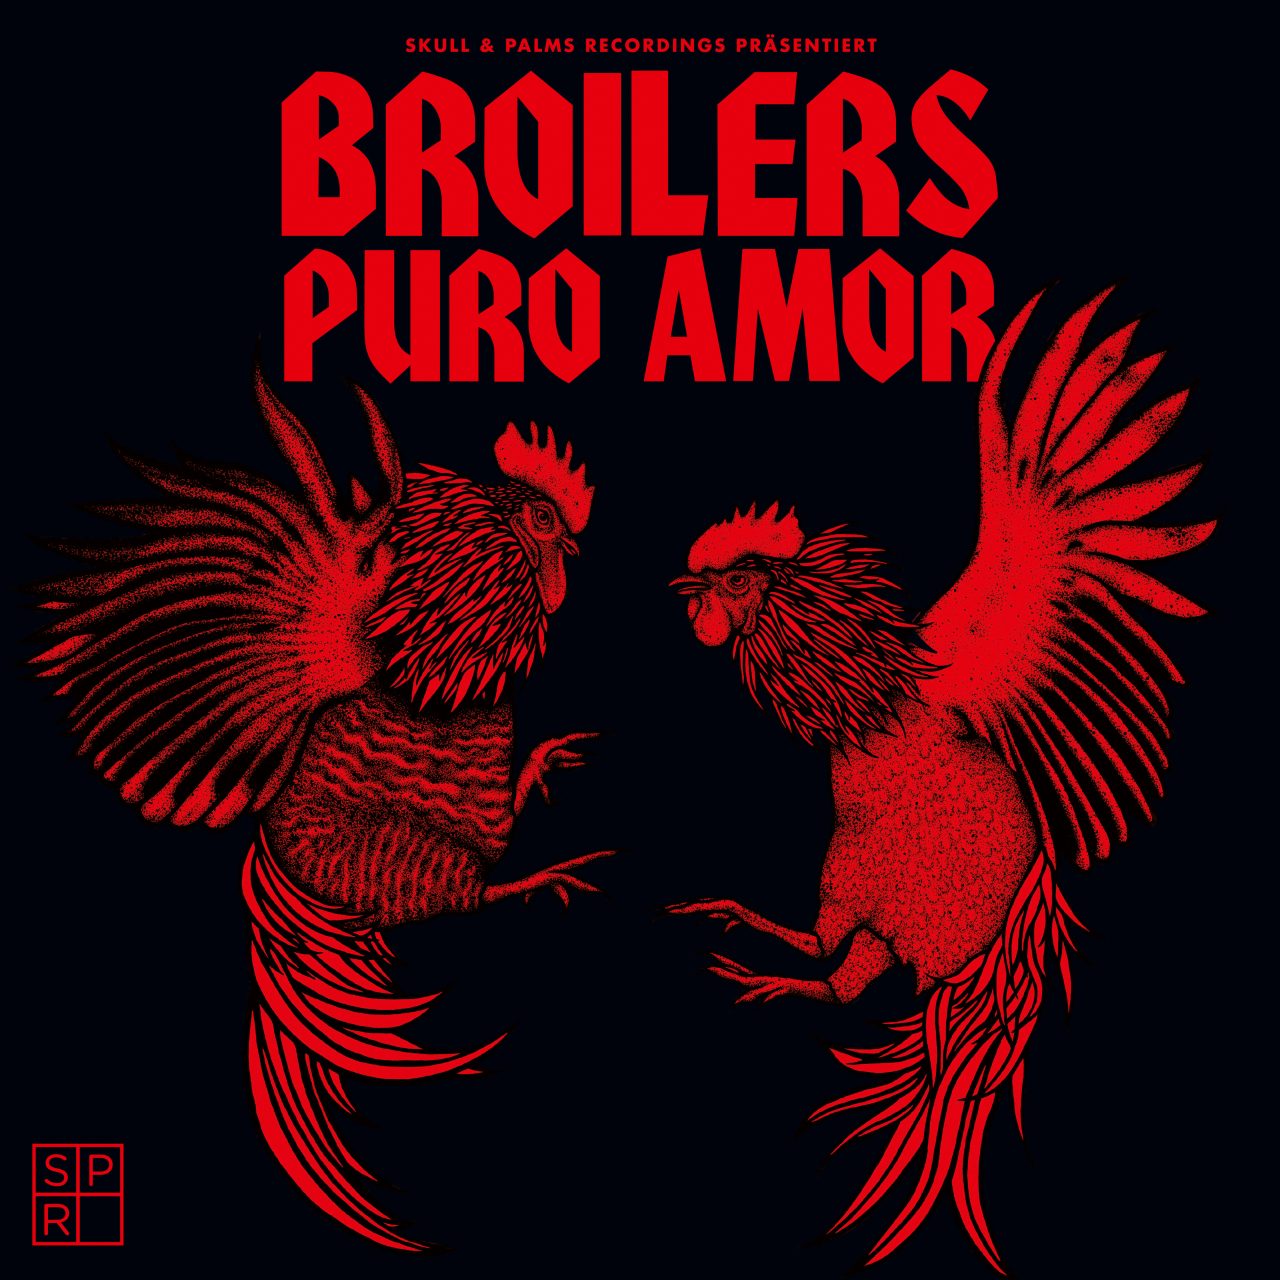 Das Albumcover "Puro Amor" von den Broilers ist schwarz. Die Schrift ist rot und darunter sind zwei Hähne im Kampf zu sehen, ebenfalls in rot.